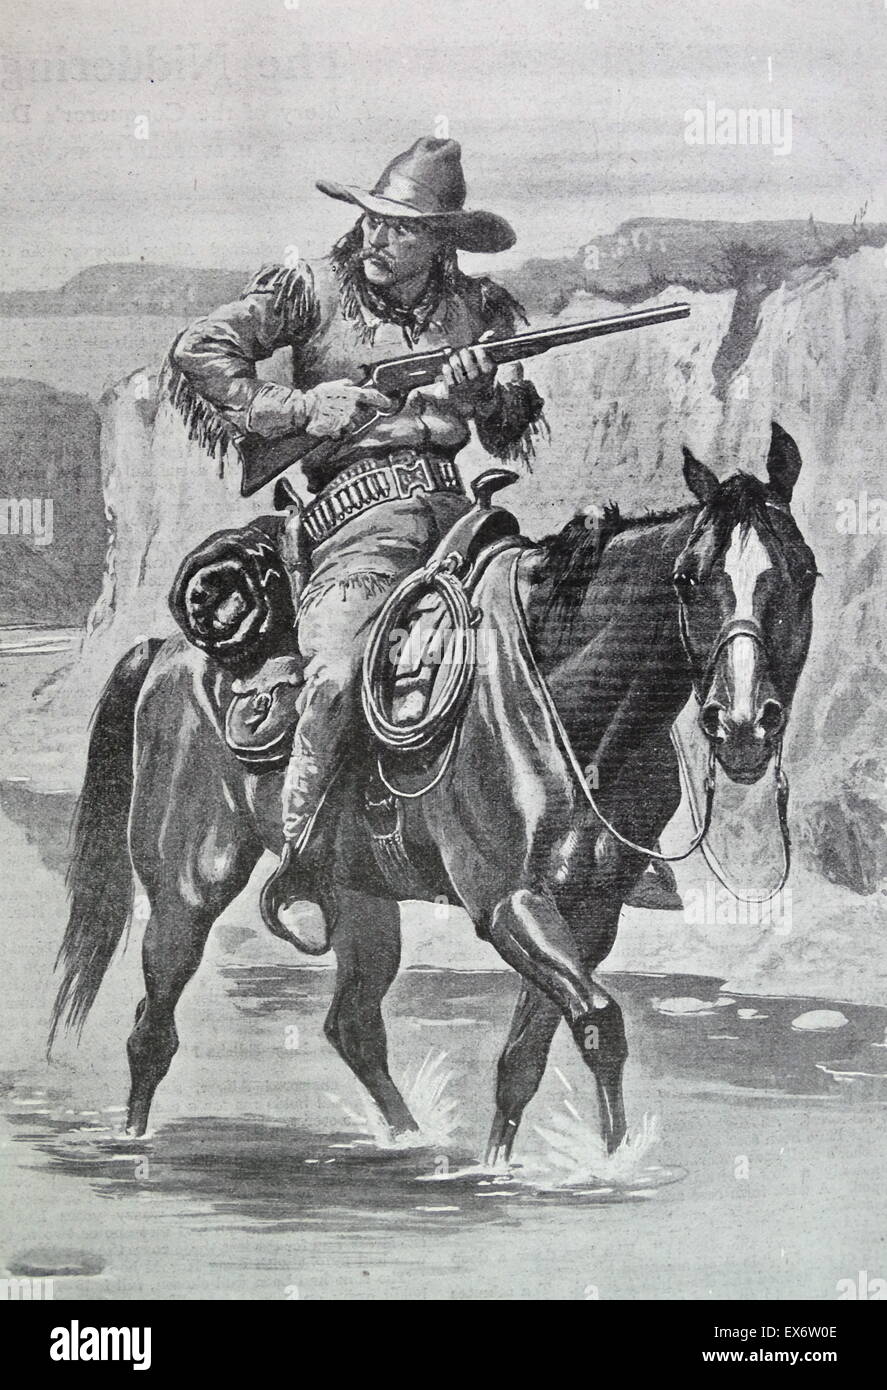 Cowboy with rifle on horseback Stock Photo